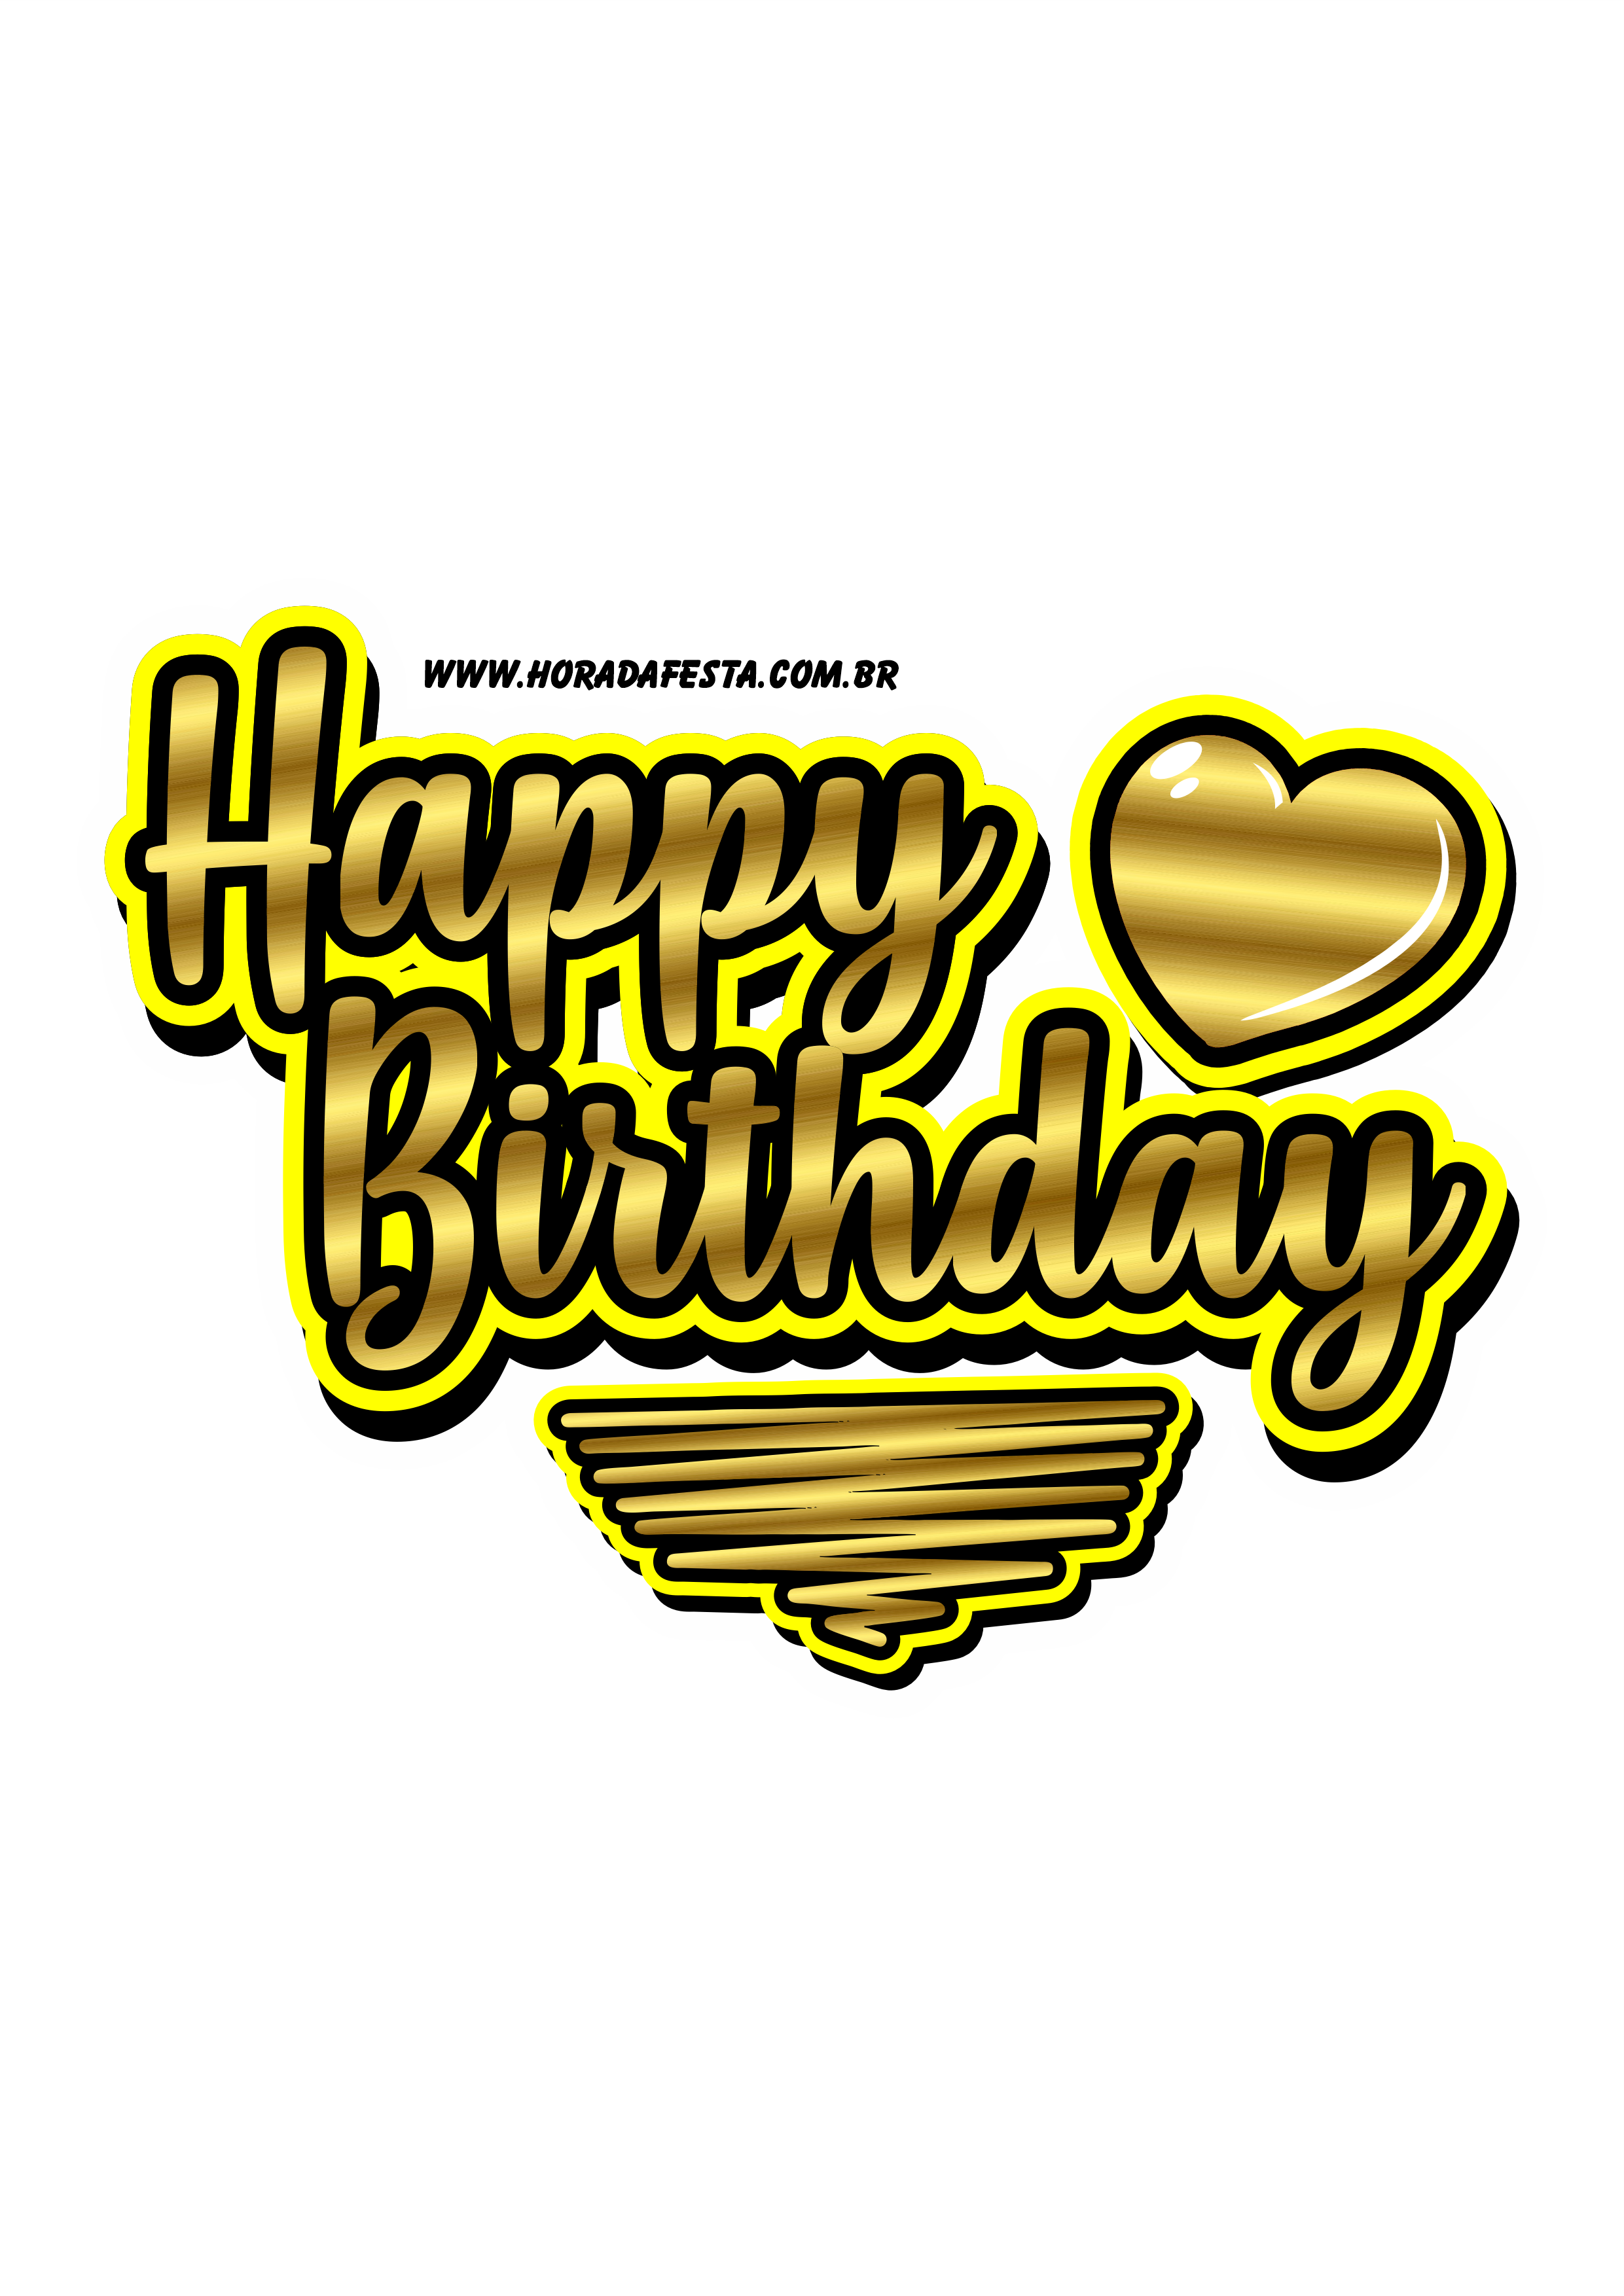 Logo Happy Birthday dourado com amarelo png